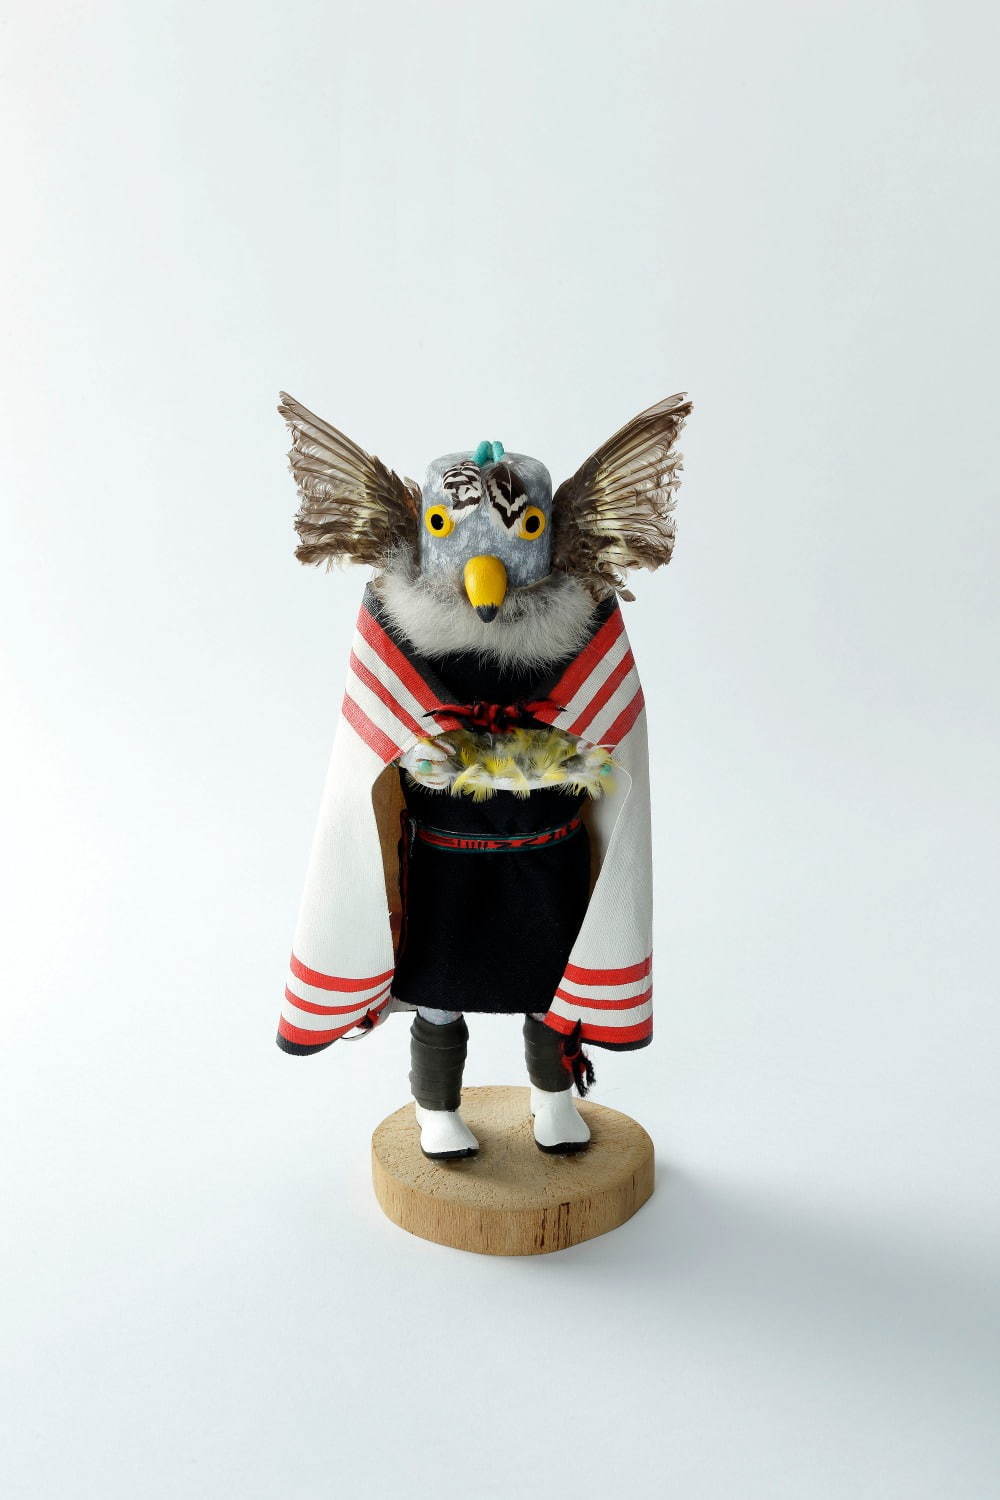 アメリカワシミミズクのカチーナ人形(アメリカ合衆国)
国立民族学博物館蔵 撮影：大道雪代